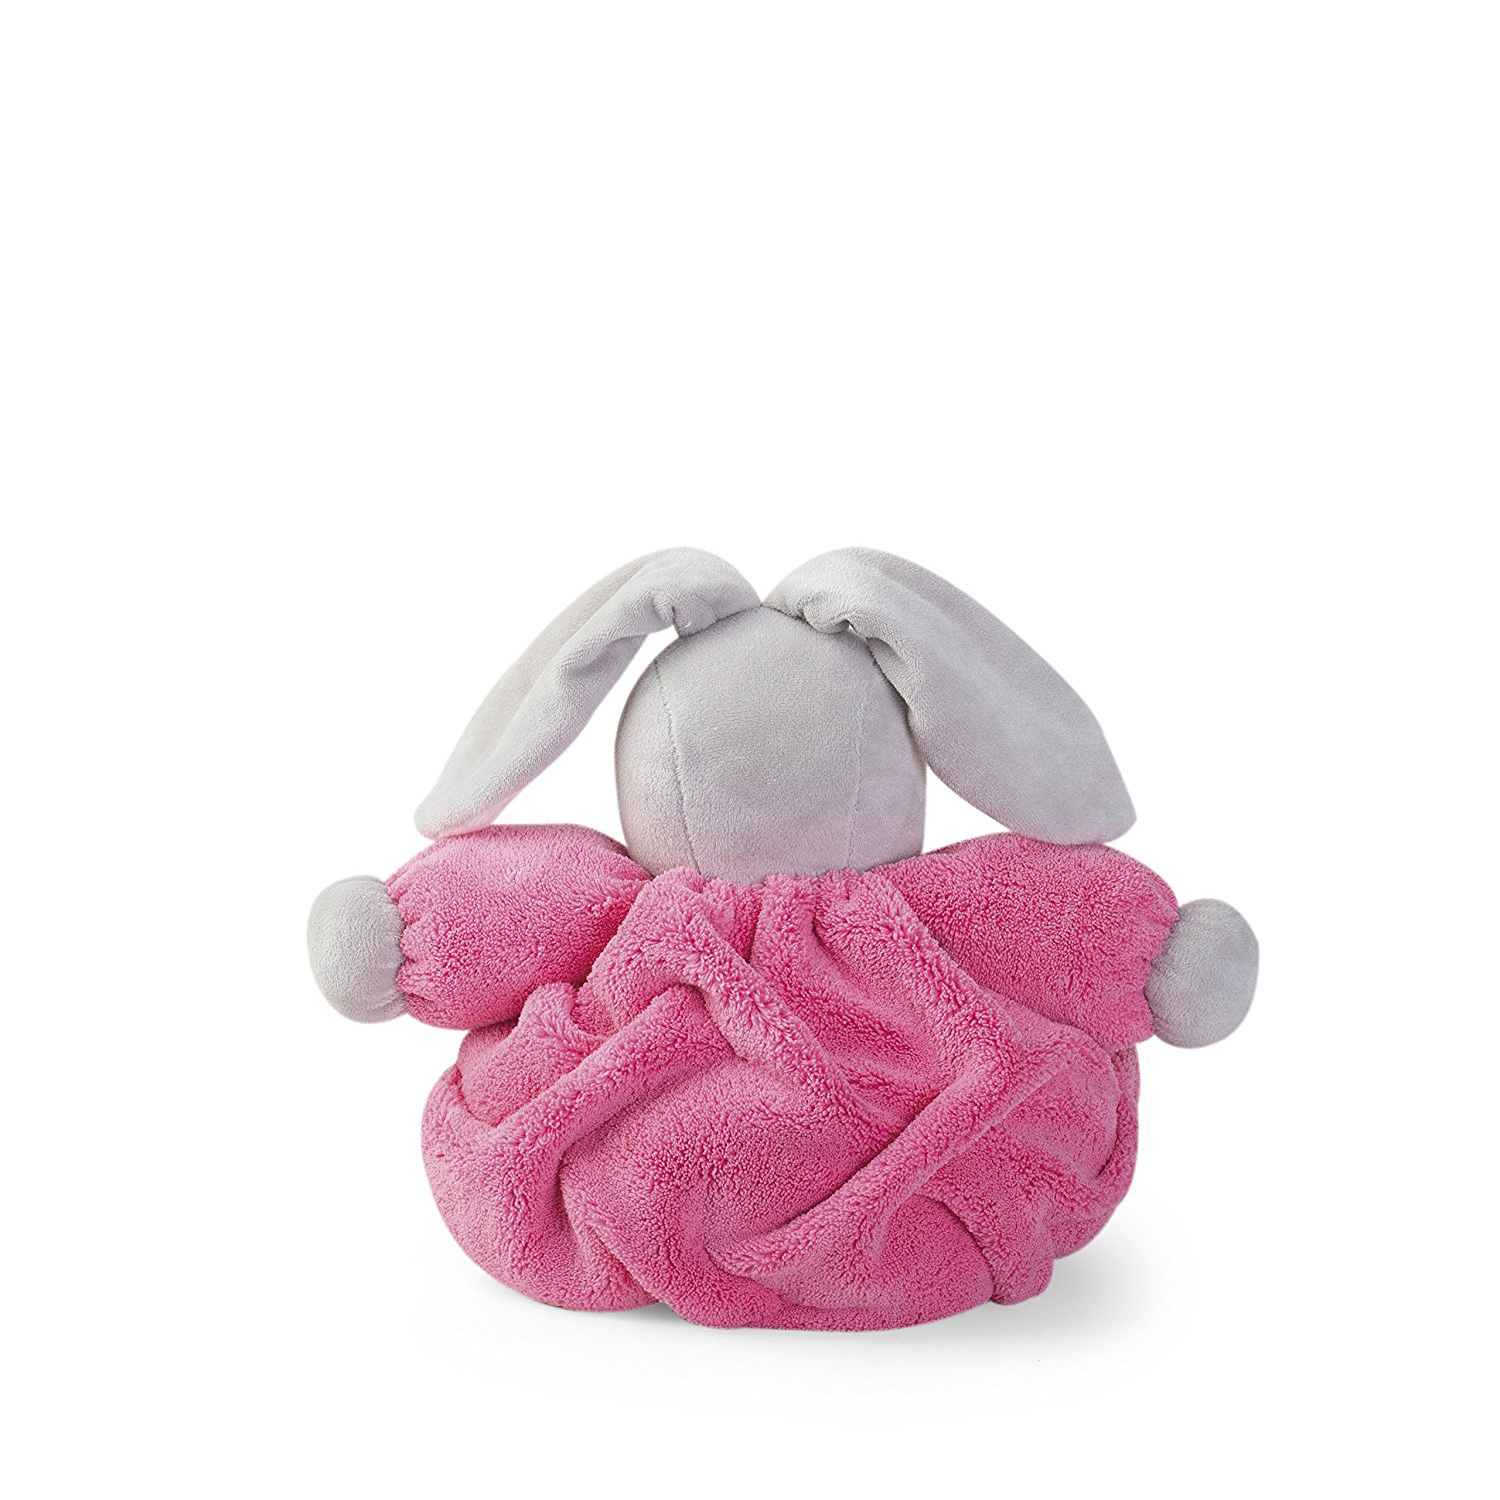 Мягкая игрушка из серии Плюм - Заяц средний розовый  